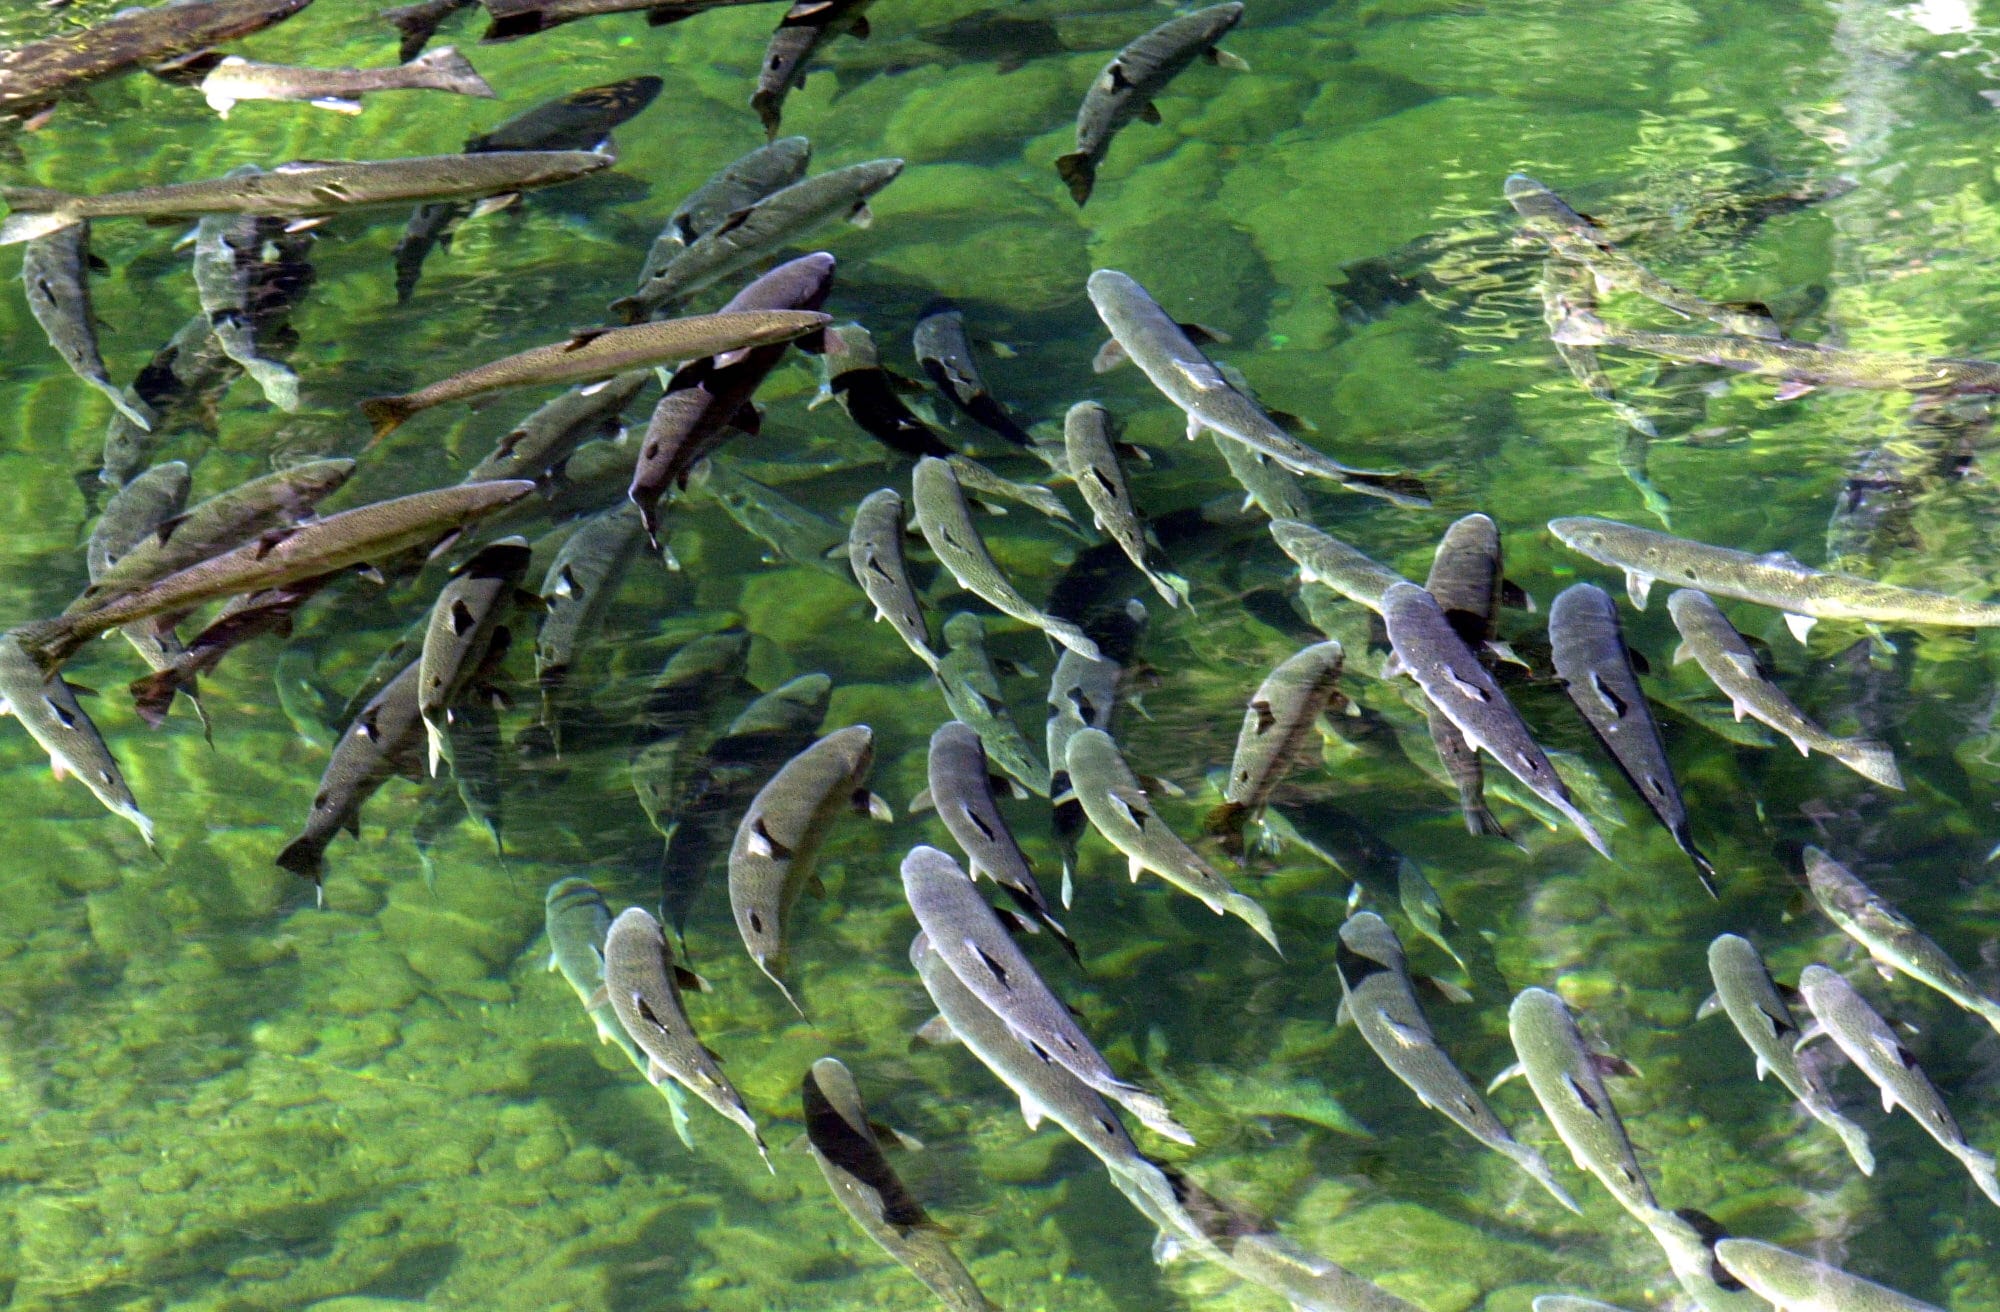 Steelhead trout swim in the Big Bend Pool of Steamboat Creek near Steamboat, Ore.